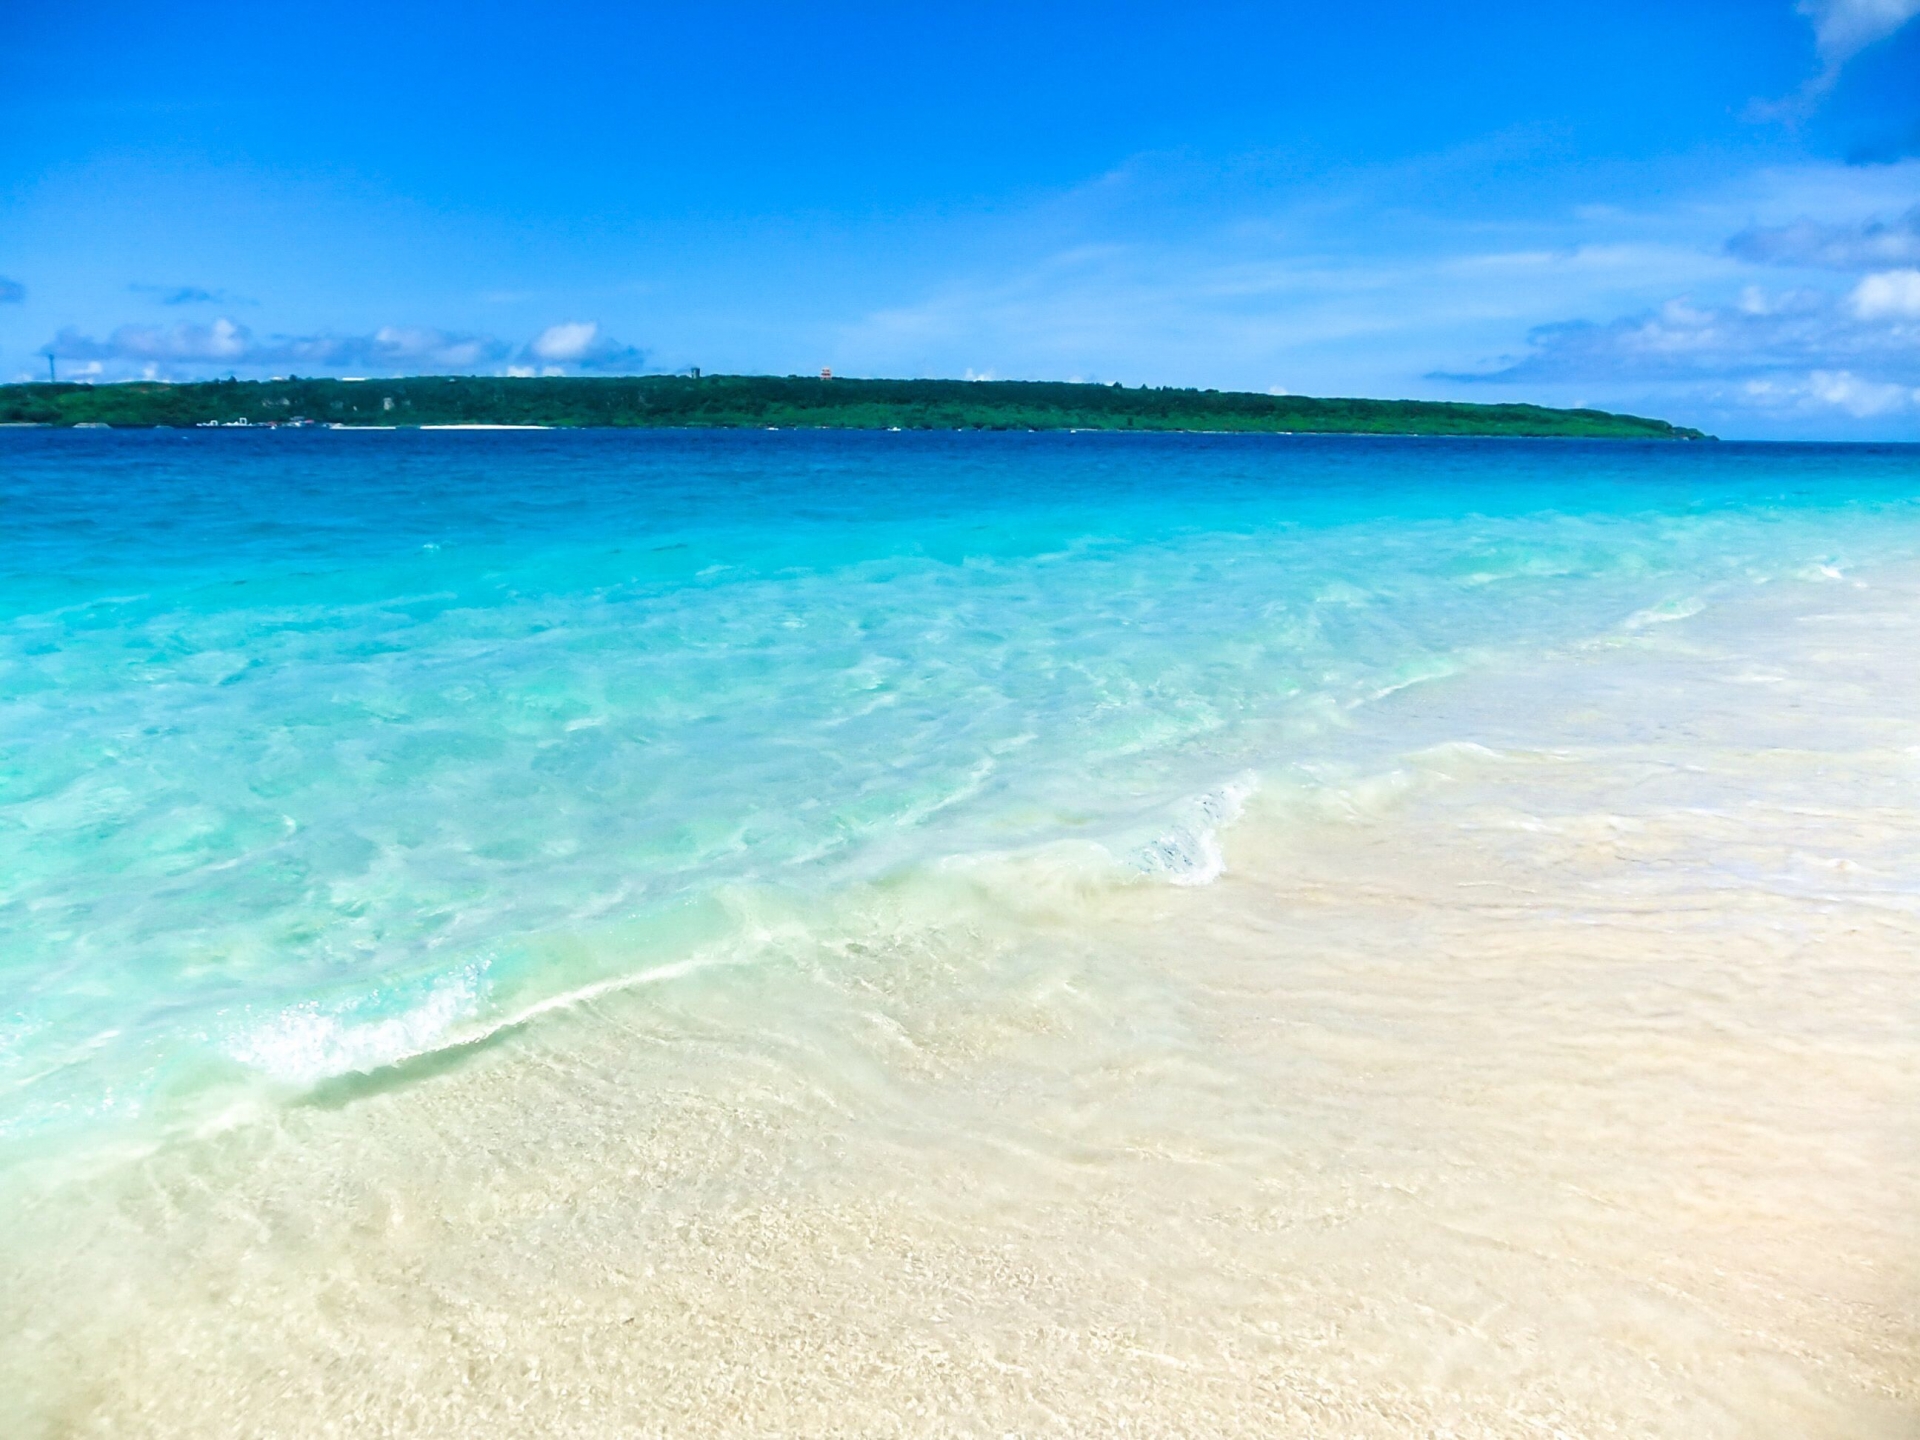 Okinawa Beaches: Best Season to Visit